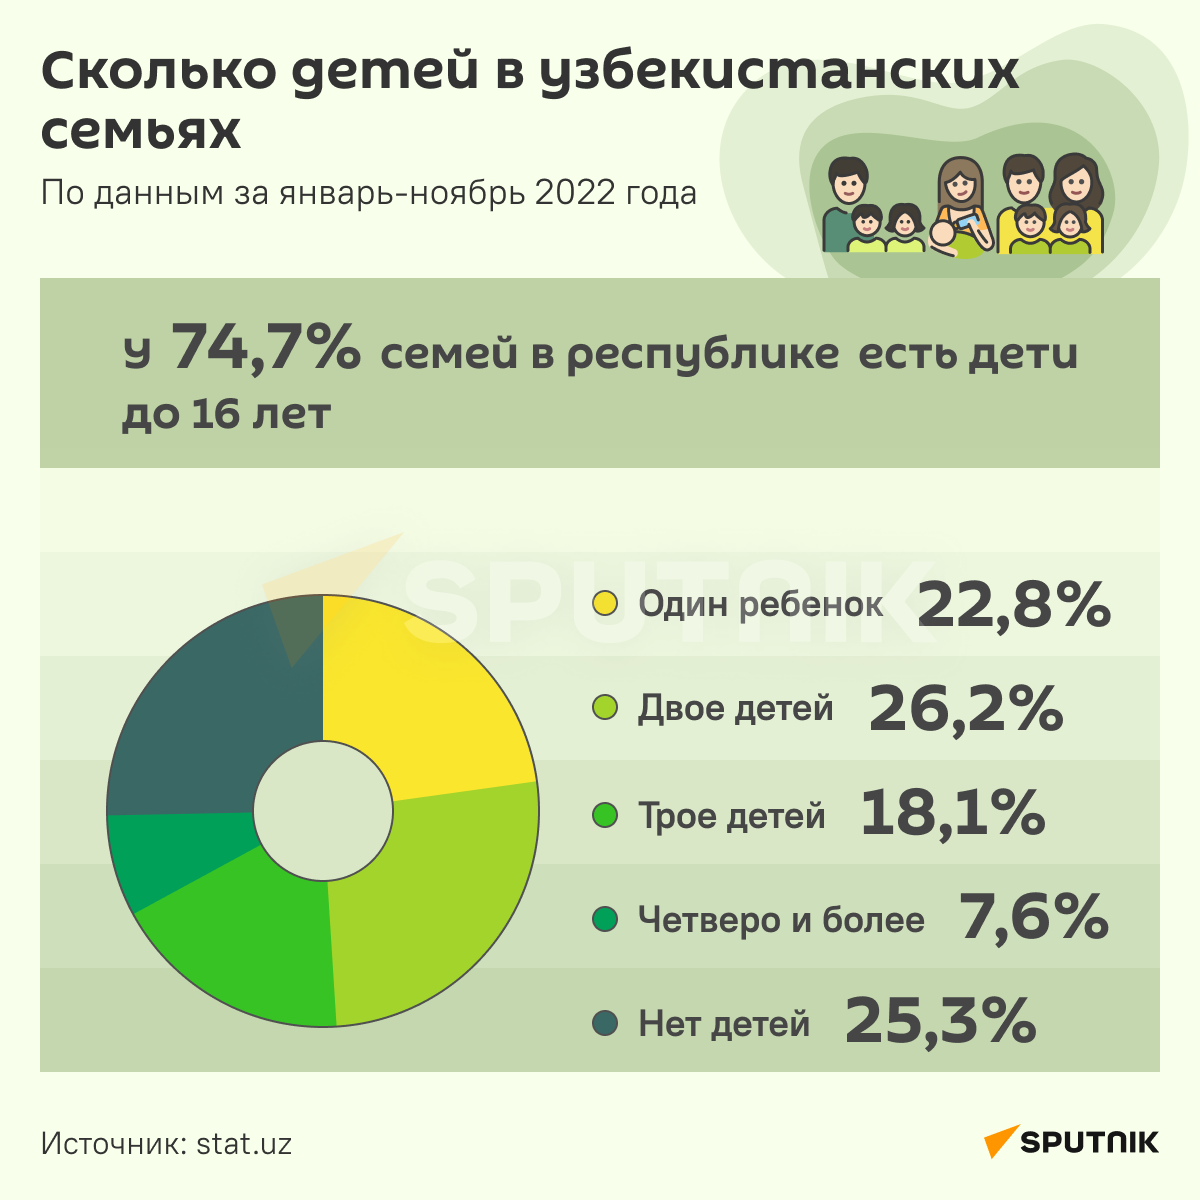 Сколько детей в узбекистанских семьях инфографика - Sputnik Узбекистан